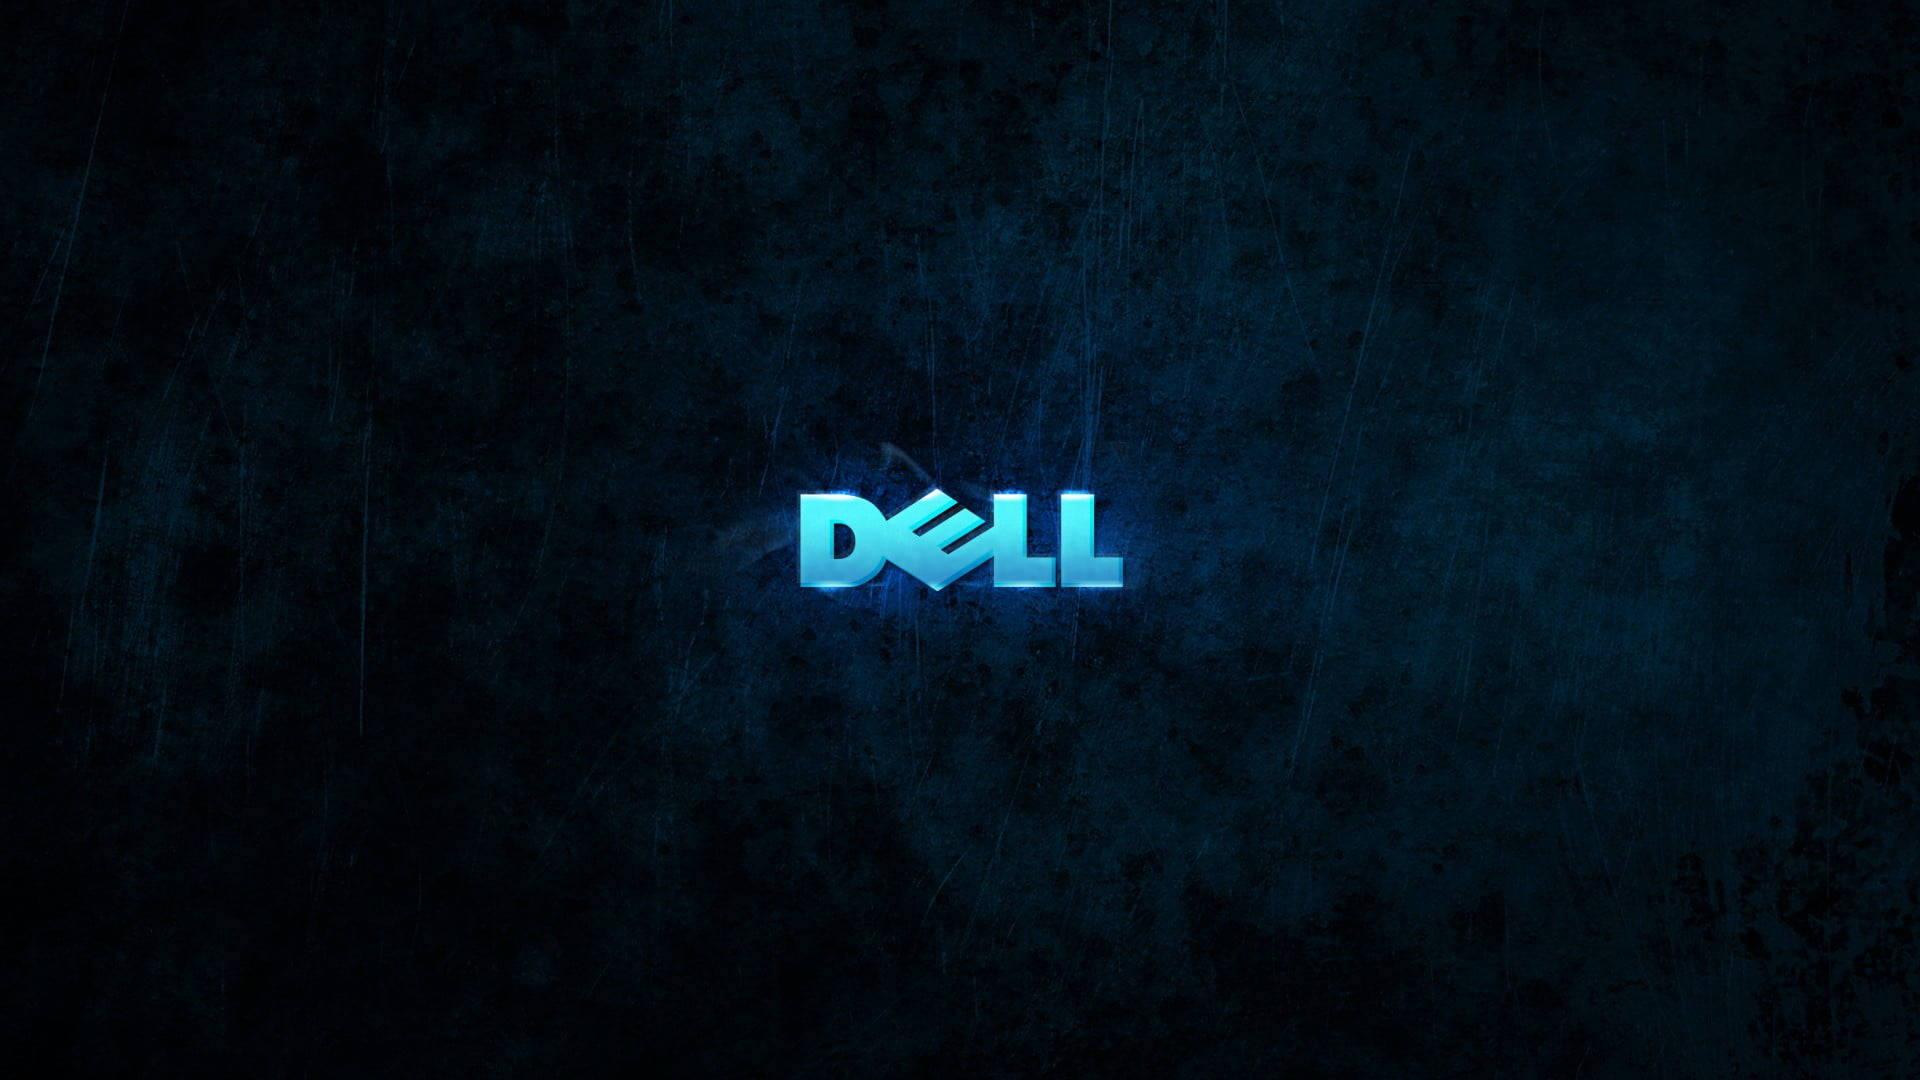 Glowing Blue Dell Laptop Logo